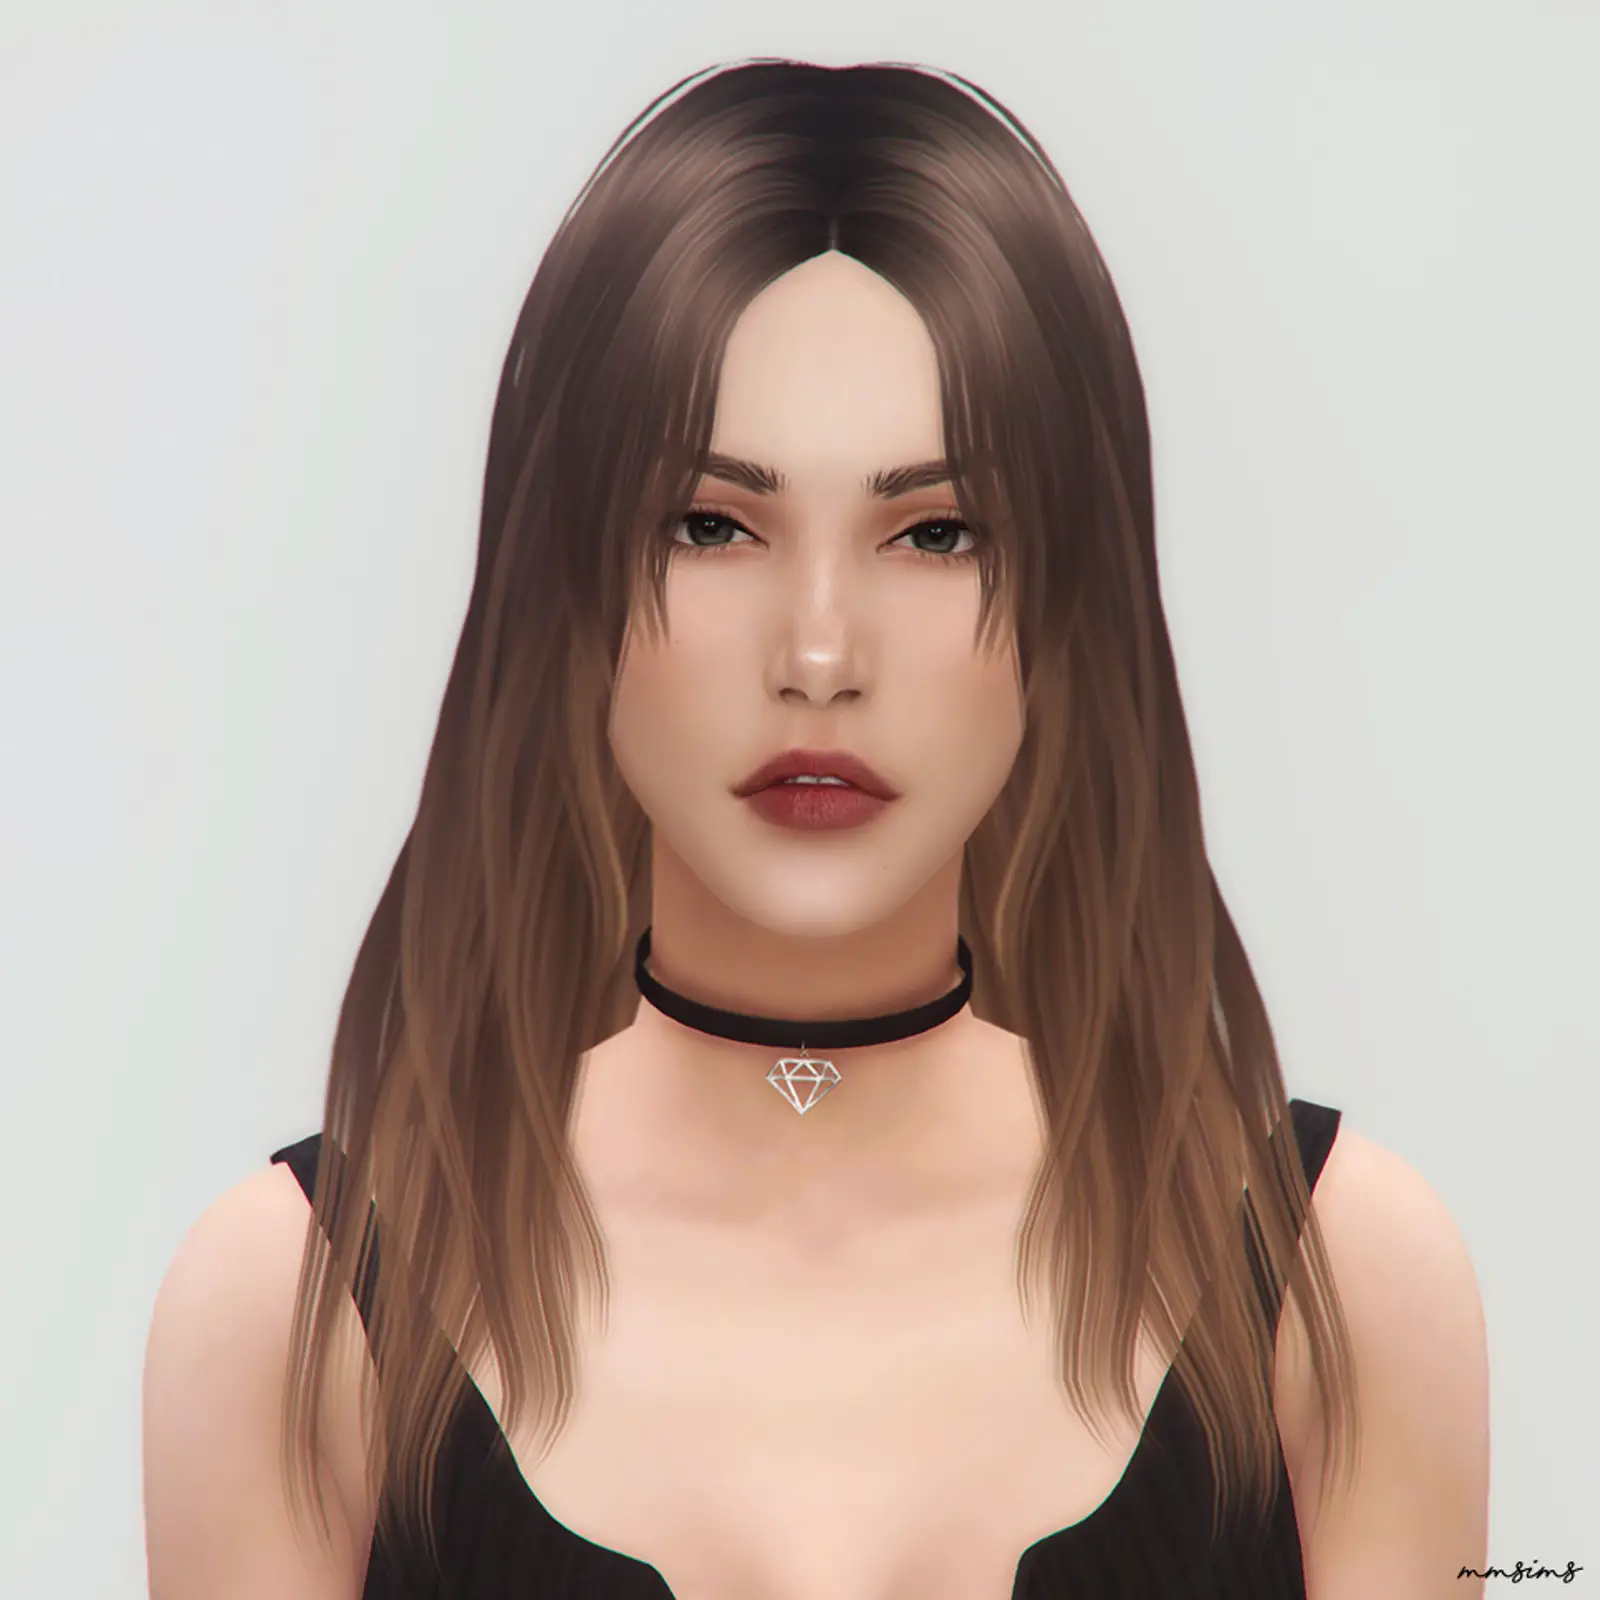 Sims 4 Hairs ~ MMSims: Hair 16 Daisy